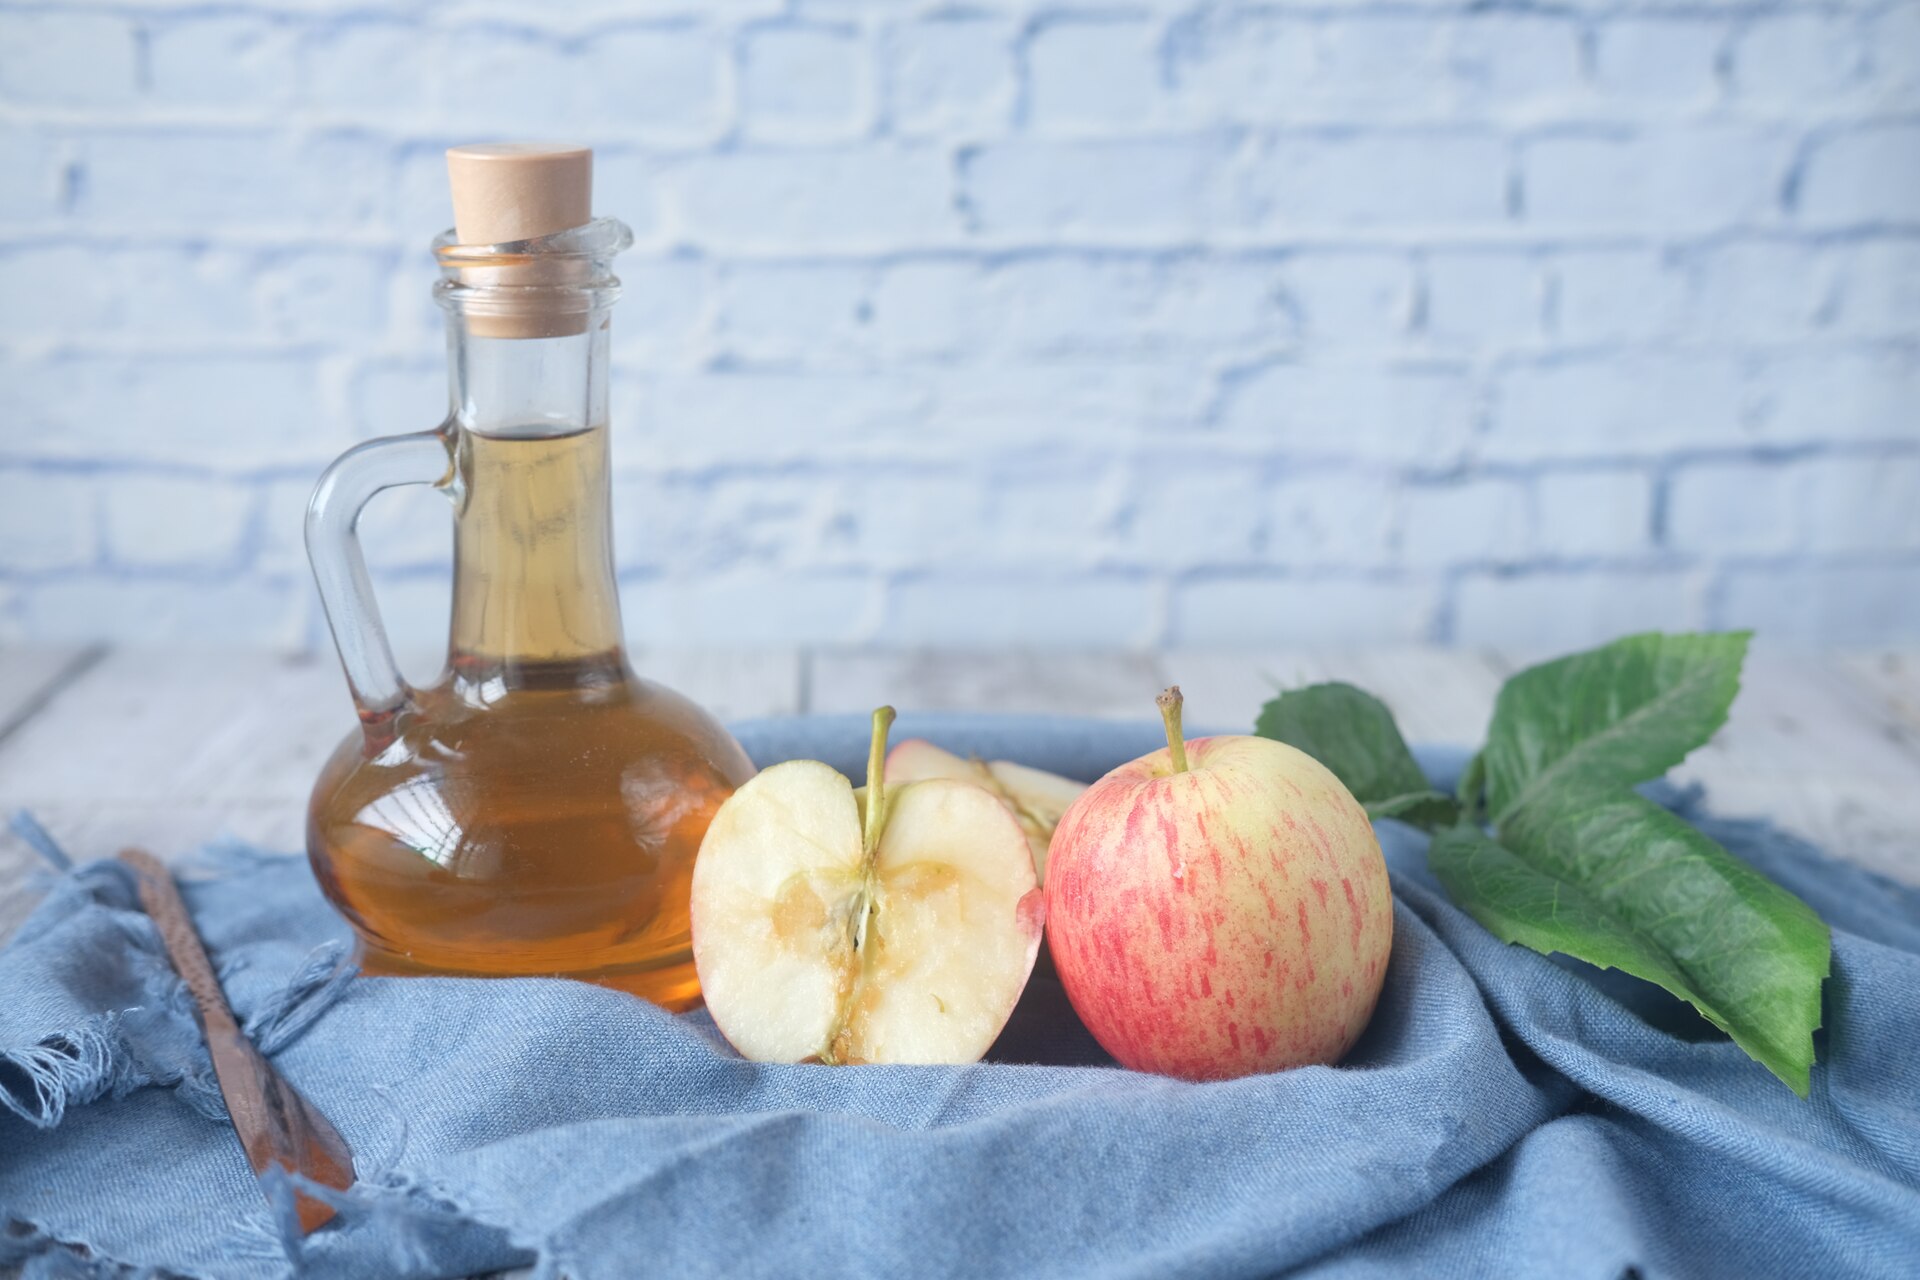 Bottle of vinegar and an apple 